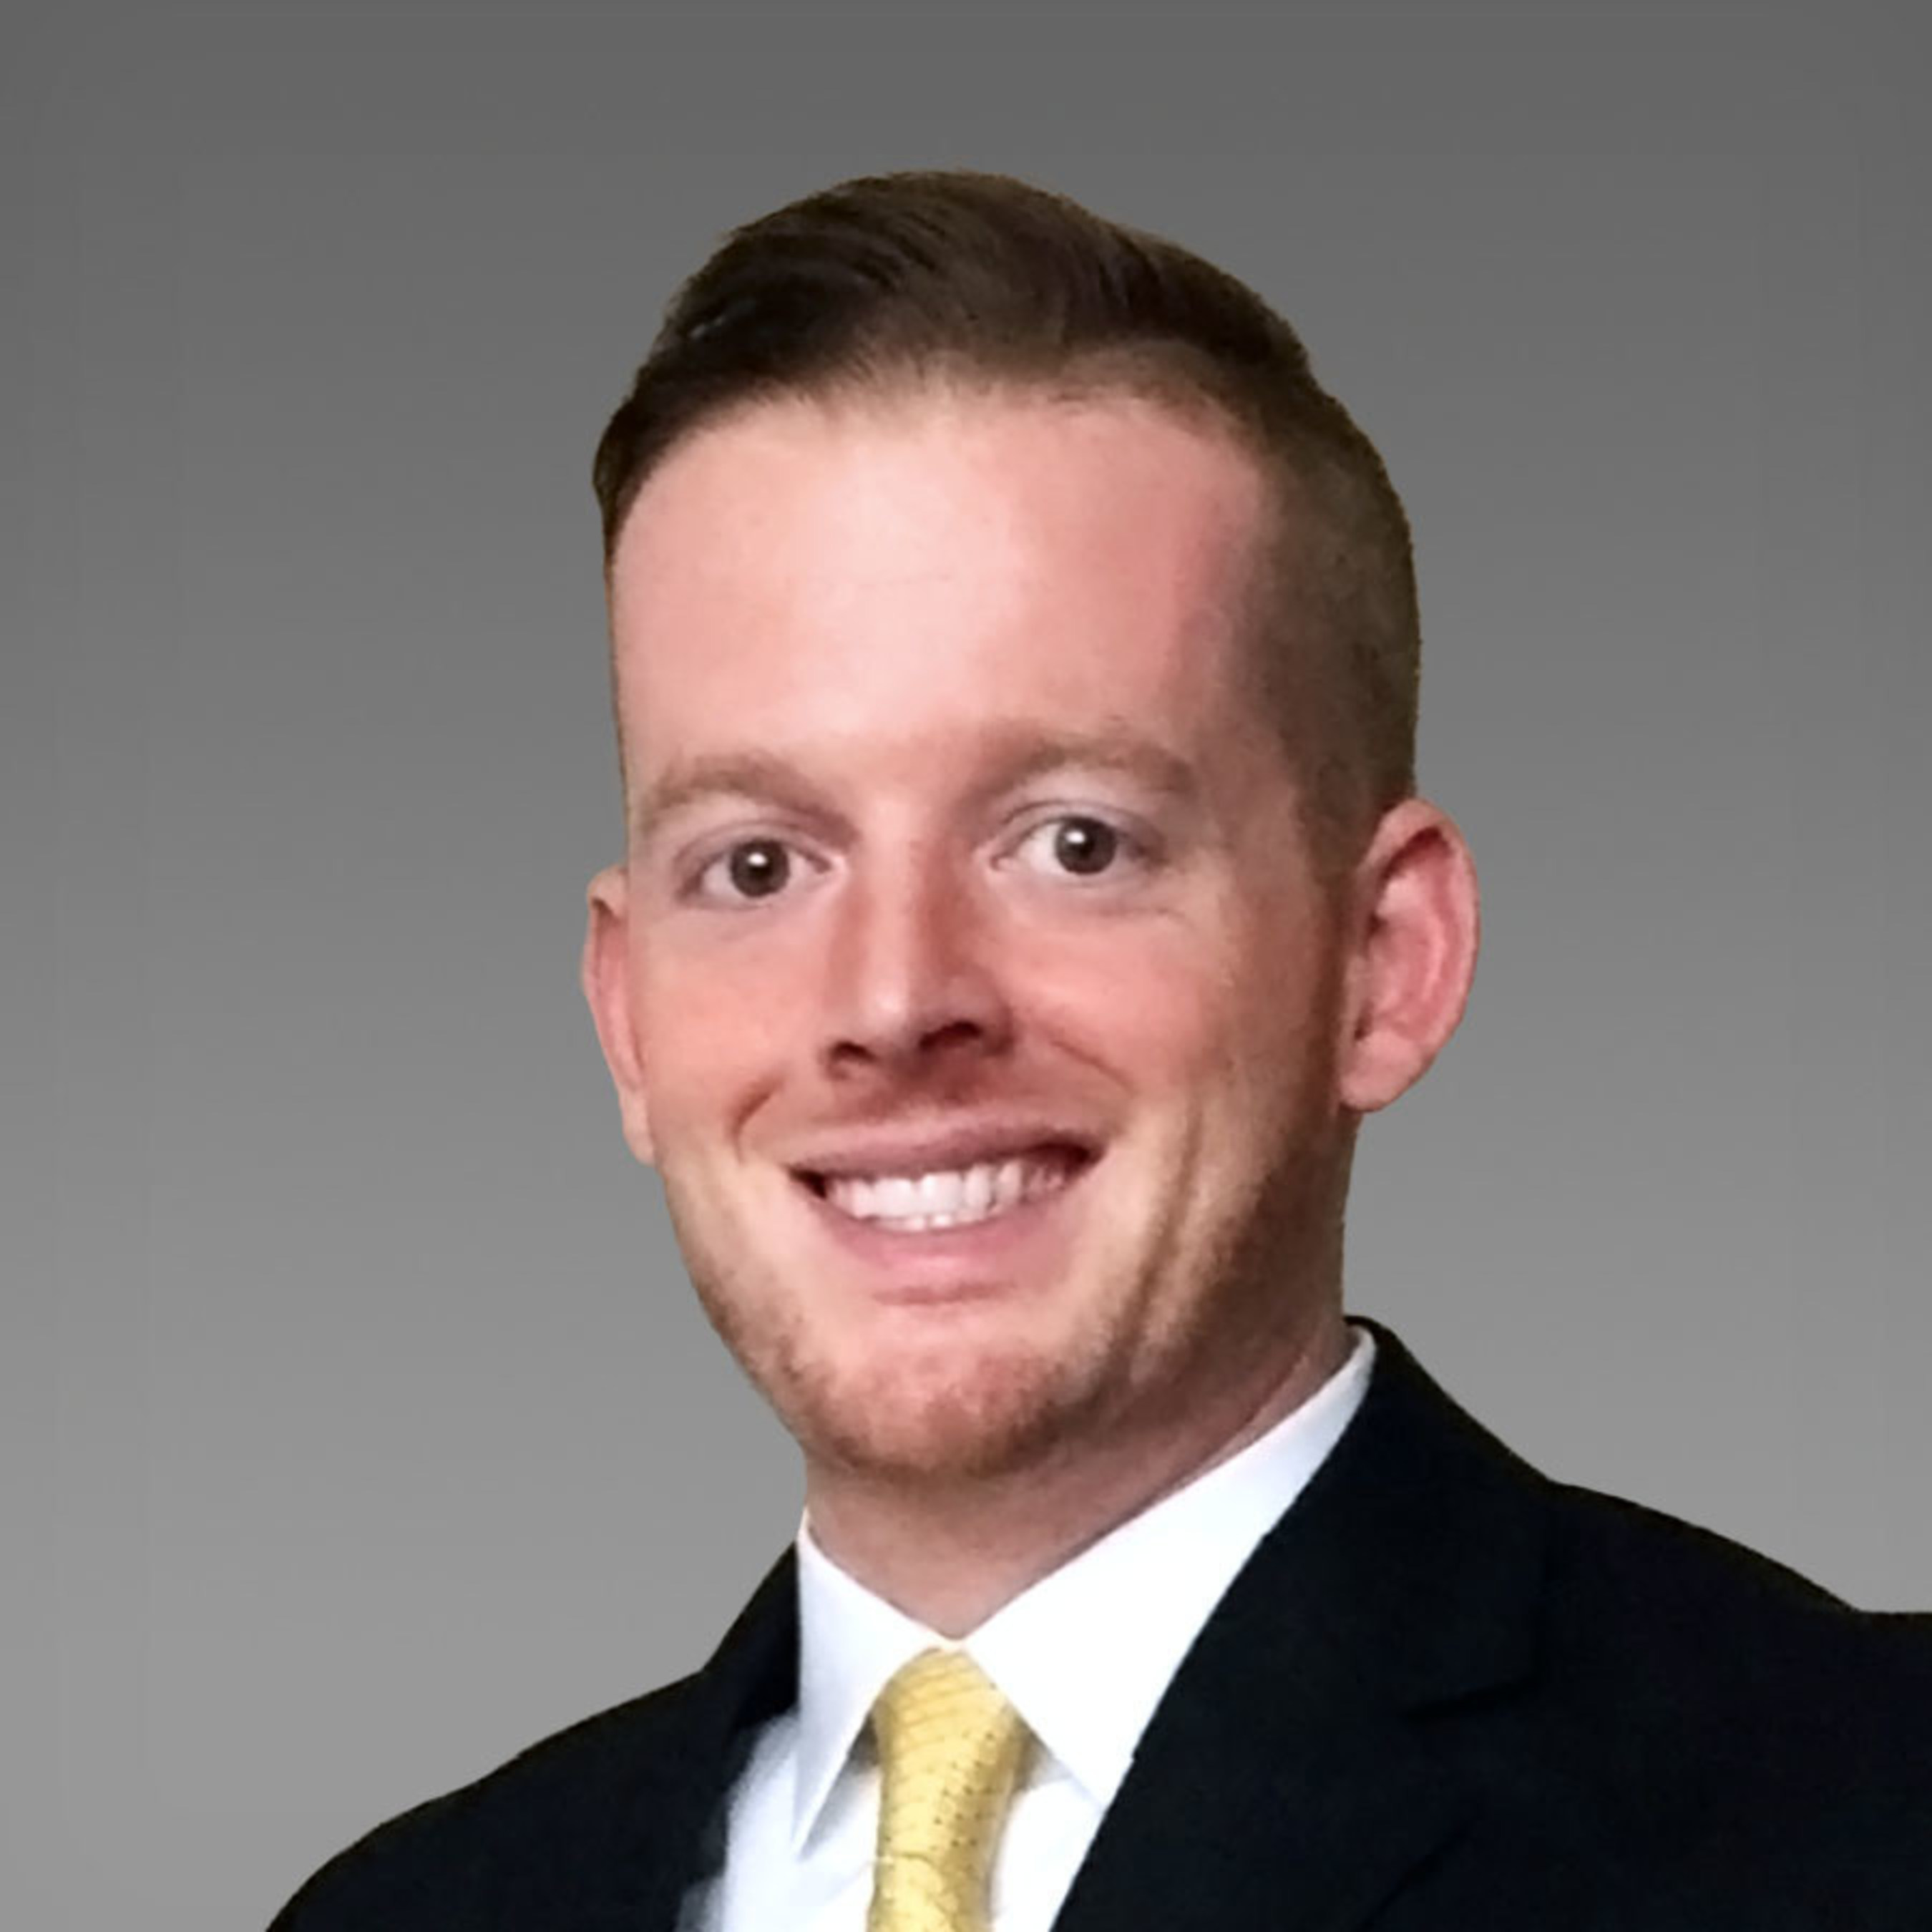 Commercial Insurance Broker Ryan B. Dill Joins Higginbotham in Houston